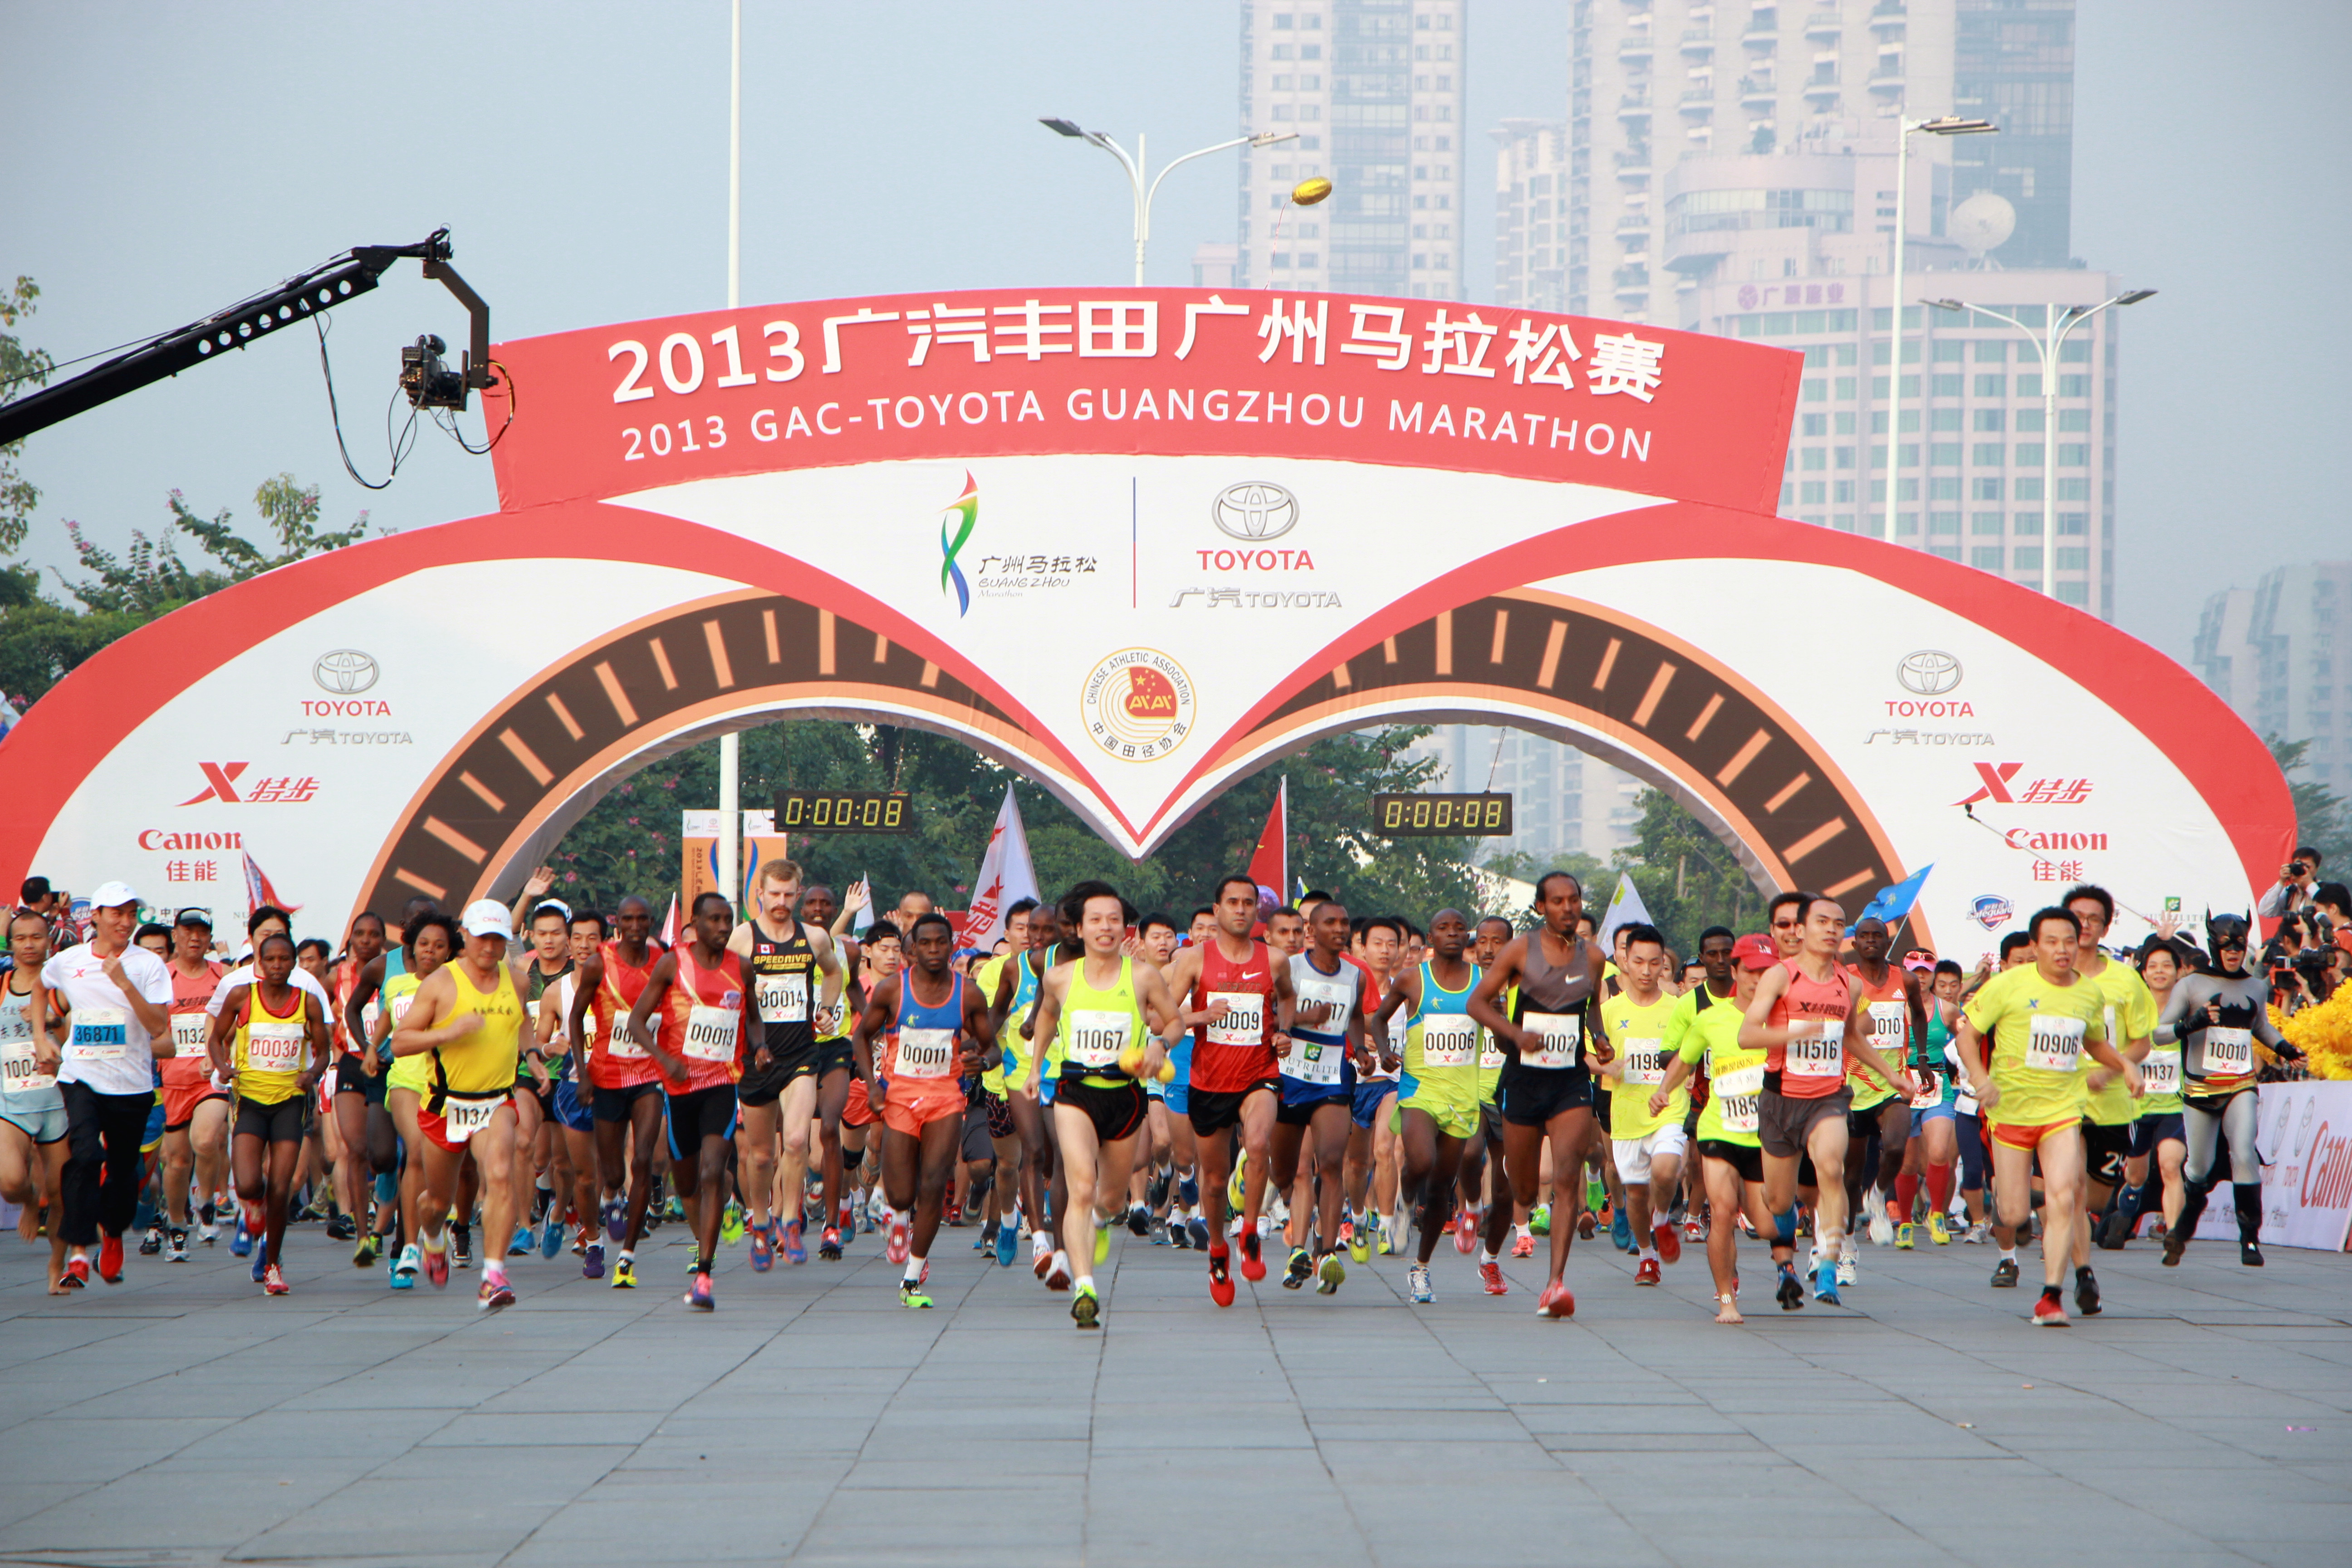 2013广汽丰田广州马拉松赛 2万多选手奔跑羊